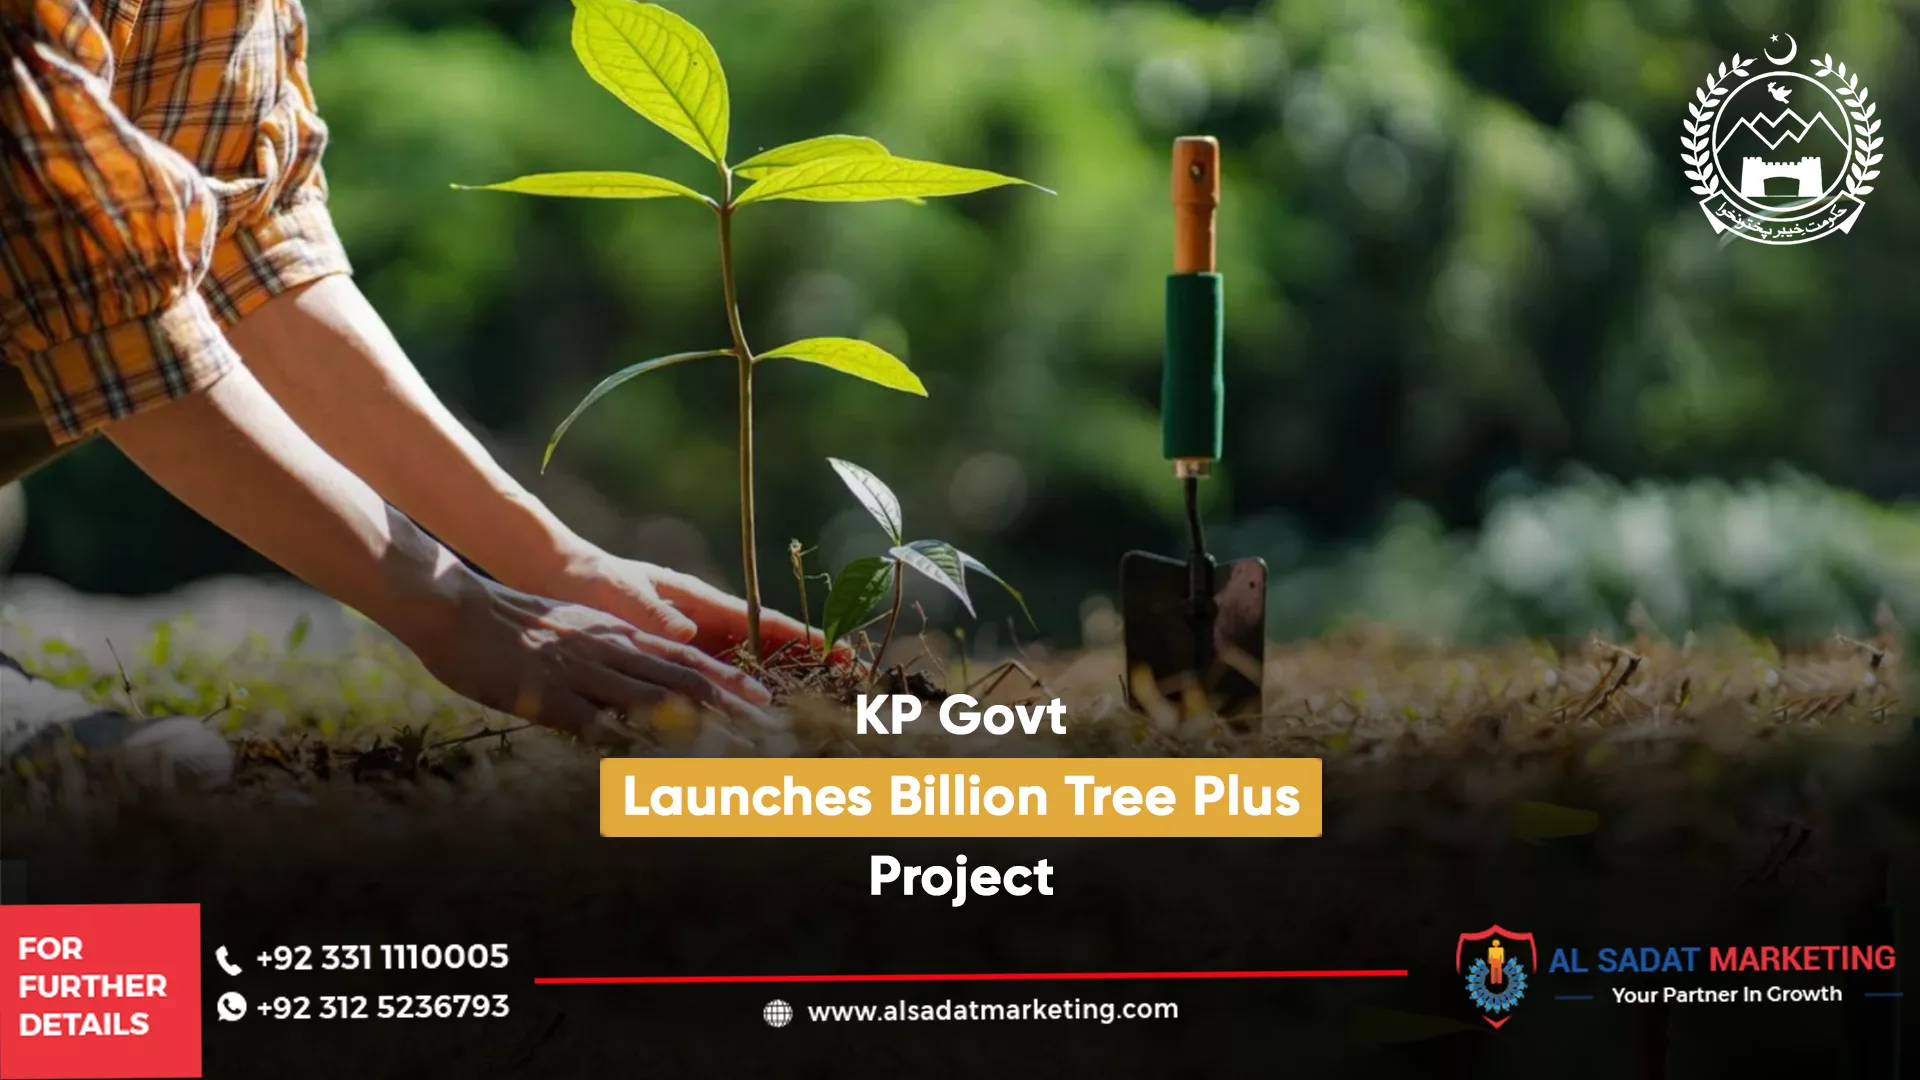 tree palntation project in kp -billion tree plus project in kpk